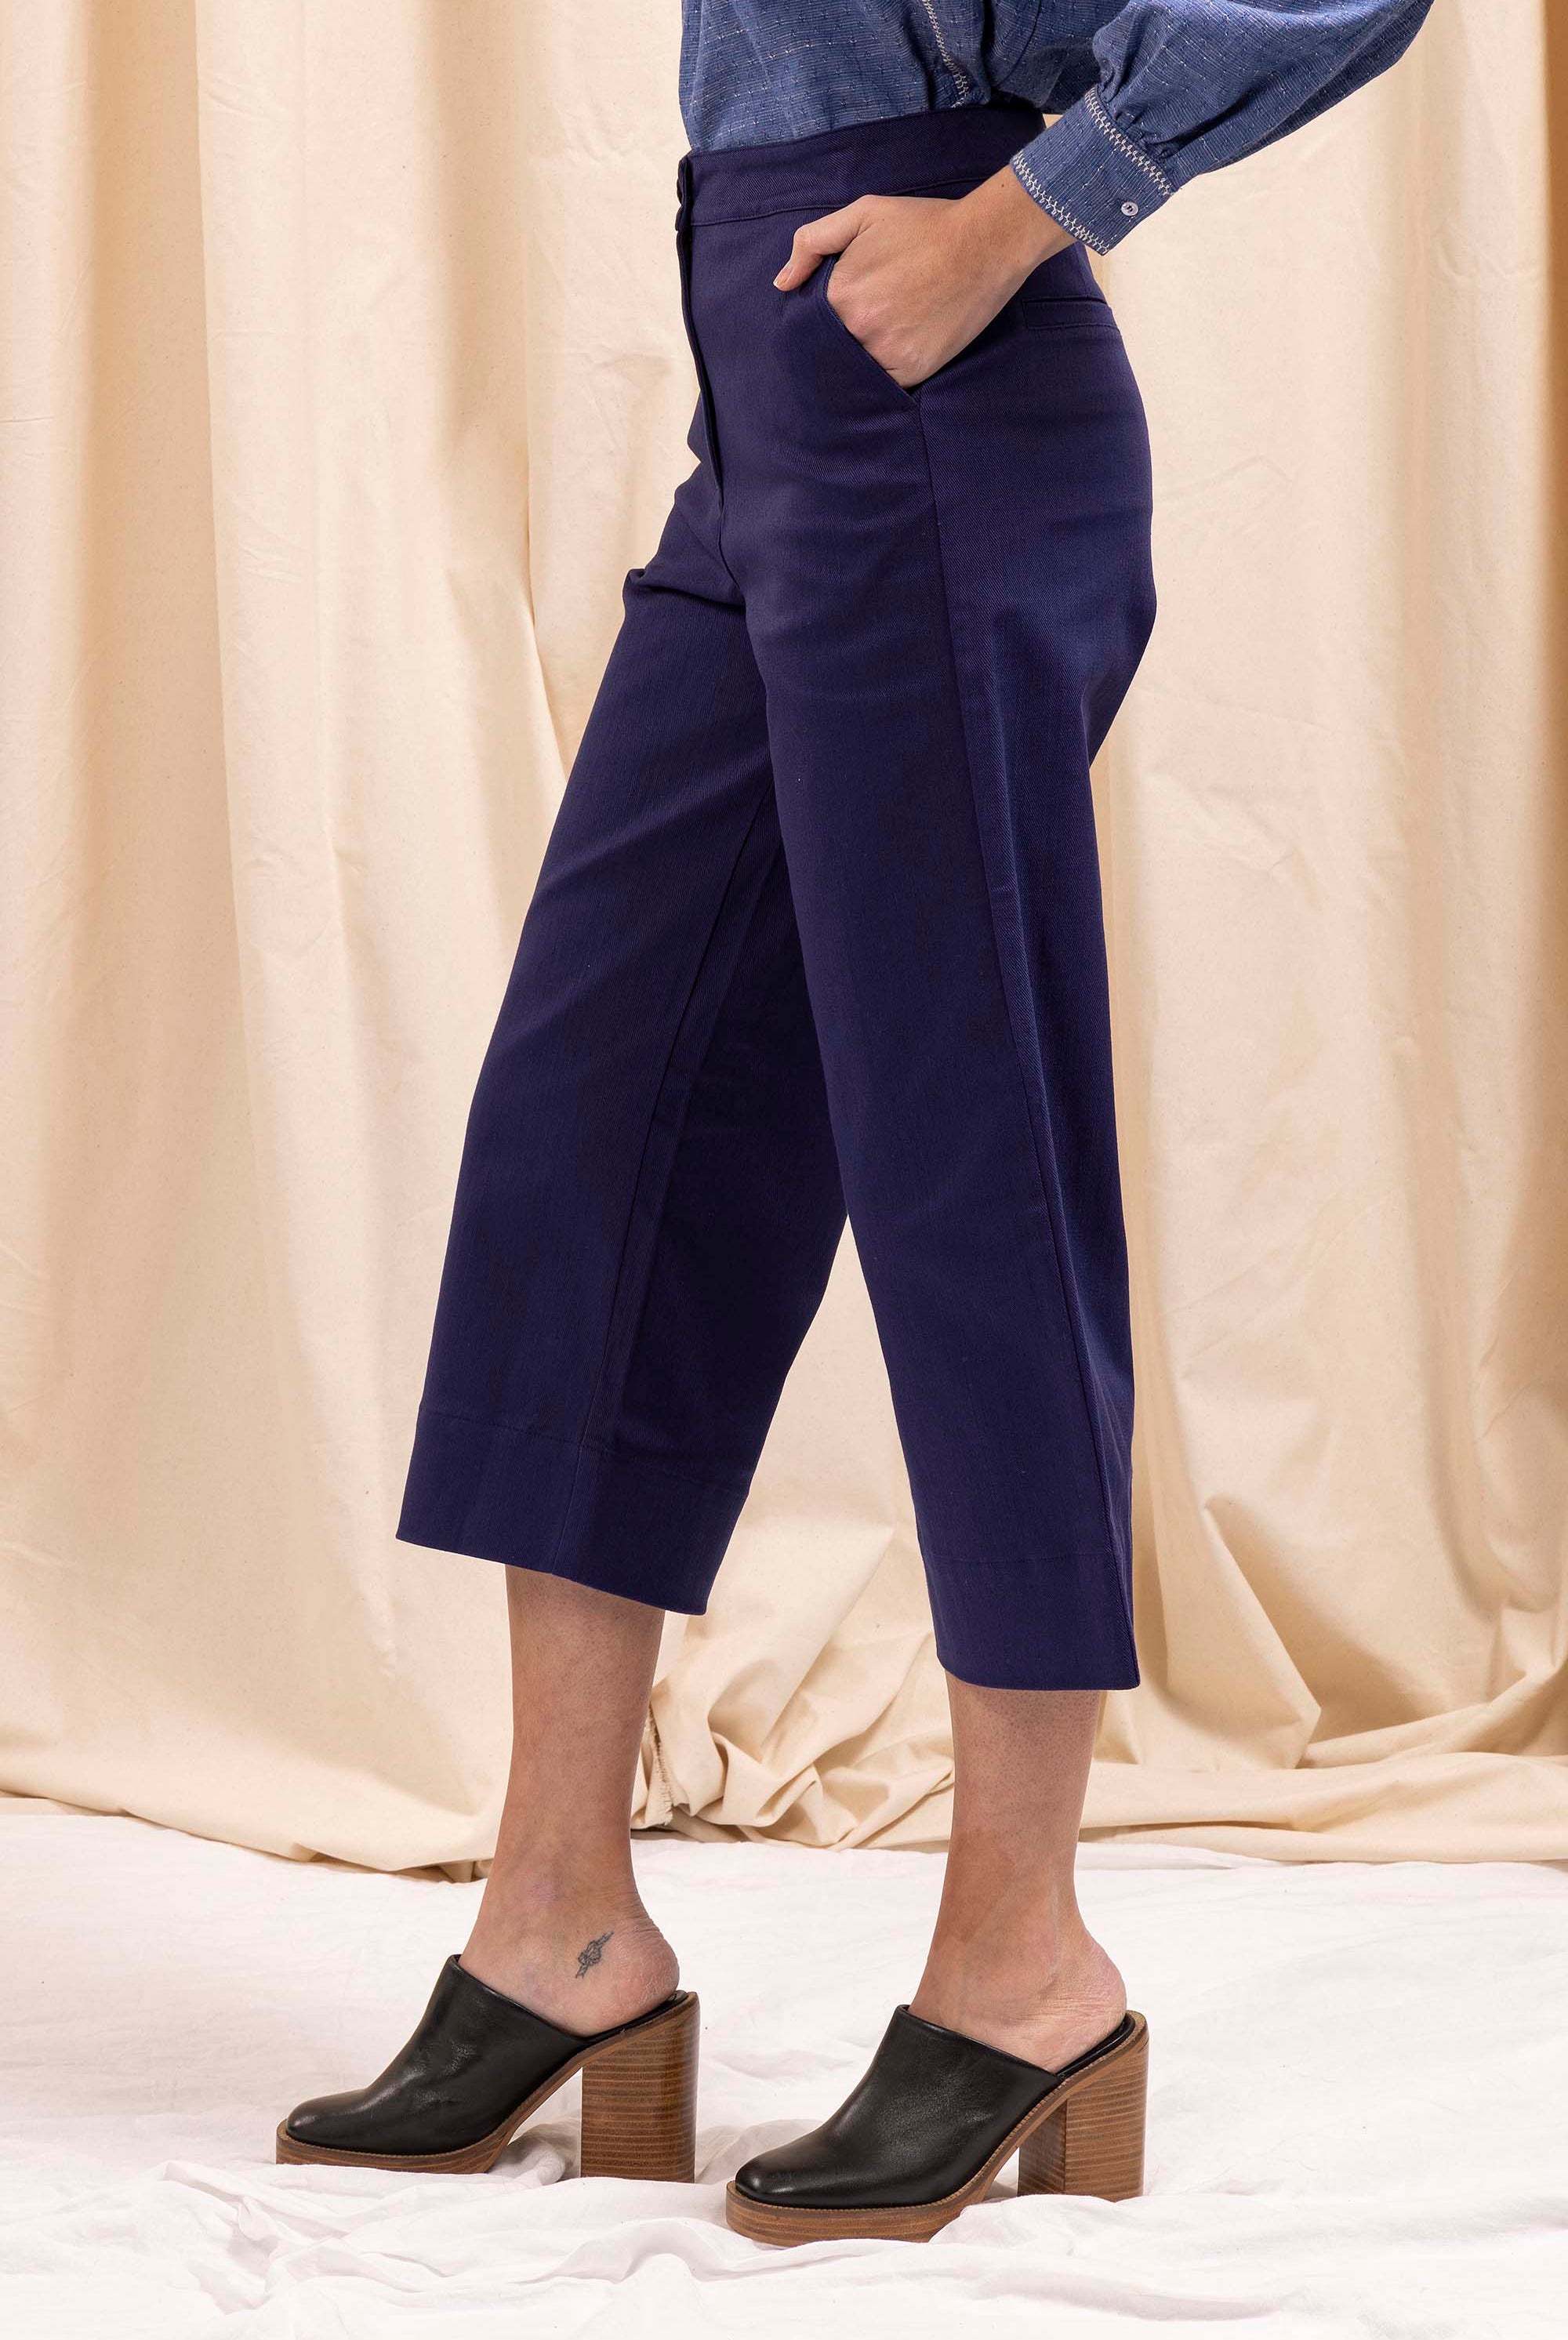 Pantalon Cristina Bleu Indigo le pantalon, une valeur sûre de la mode pour une allure à tomber